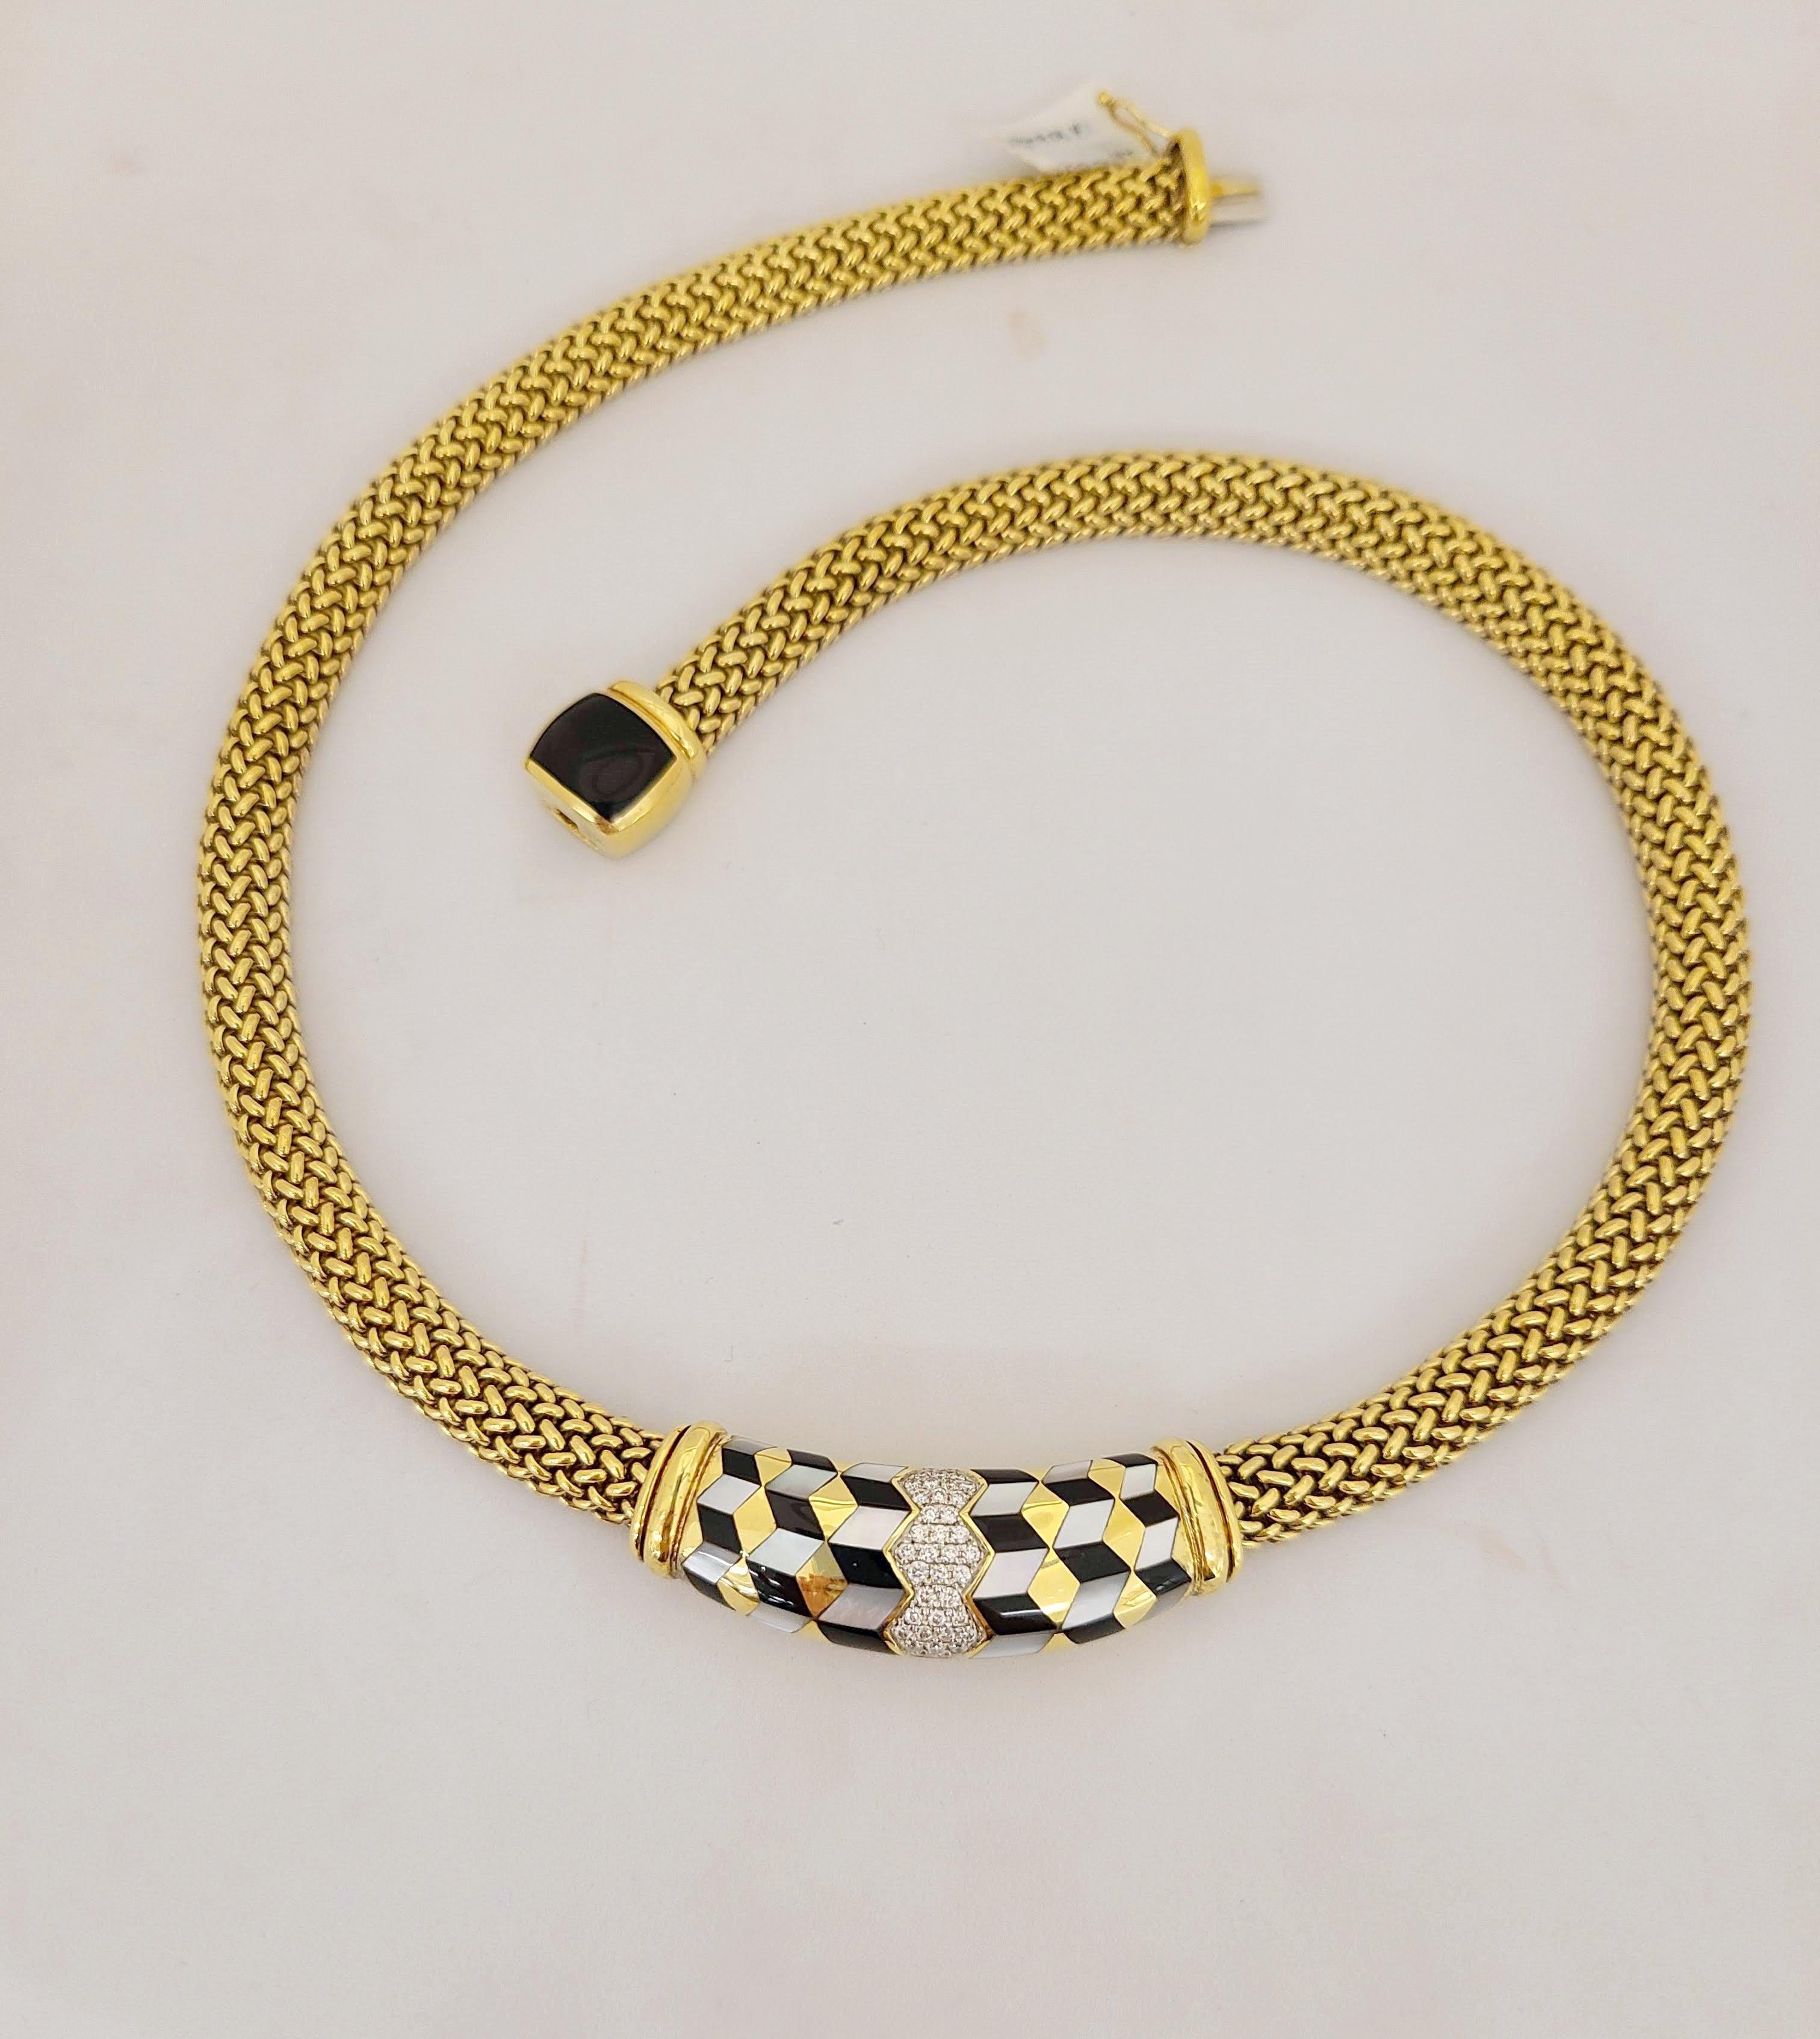 Ce superbe collier Asch Grossbardt en or jaune 18 carats est conçu avec une chaîne en maille bombe en or jaune. La pièce centrale est incrustée d'un motif géométrique en onyx noir,  Nacre et diamants. Le fermoir est un motif coussin en onyx noir.